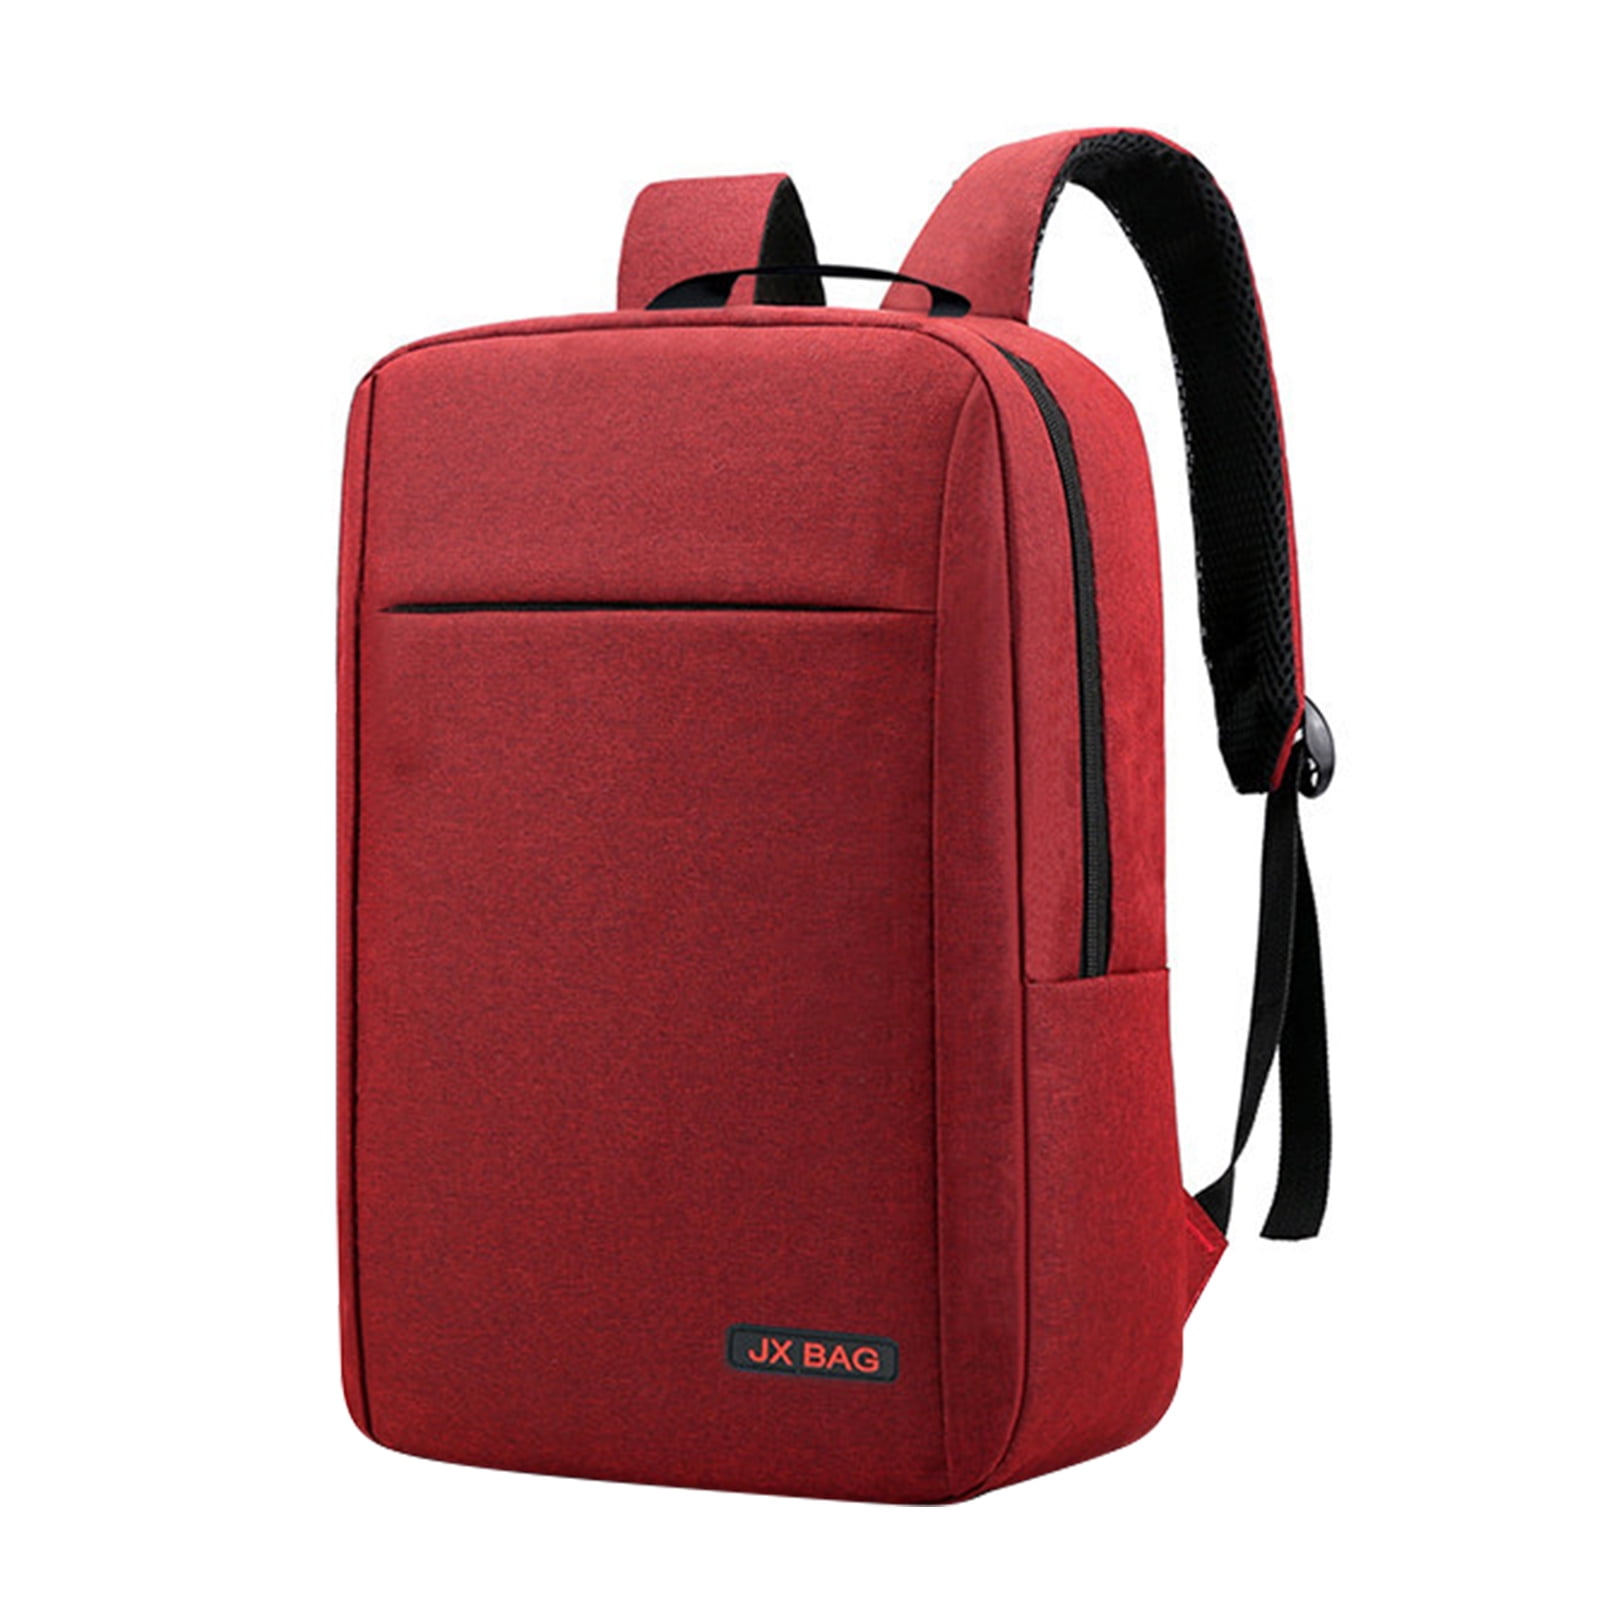 HDHUA Laptop Bag Multifunction USB Charging Oxford Cloth Shoulder Bag Outdoor Travel Backpack Computer Shoulder Bag Large Capacity